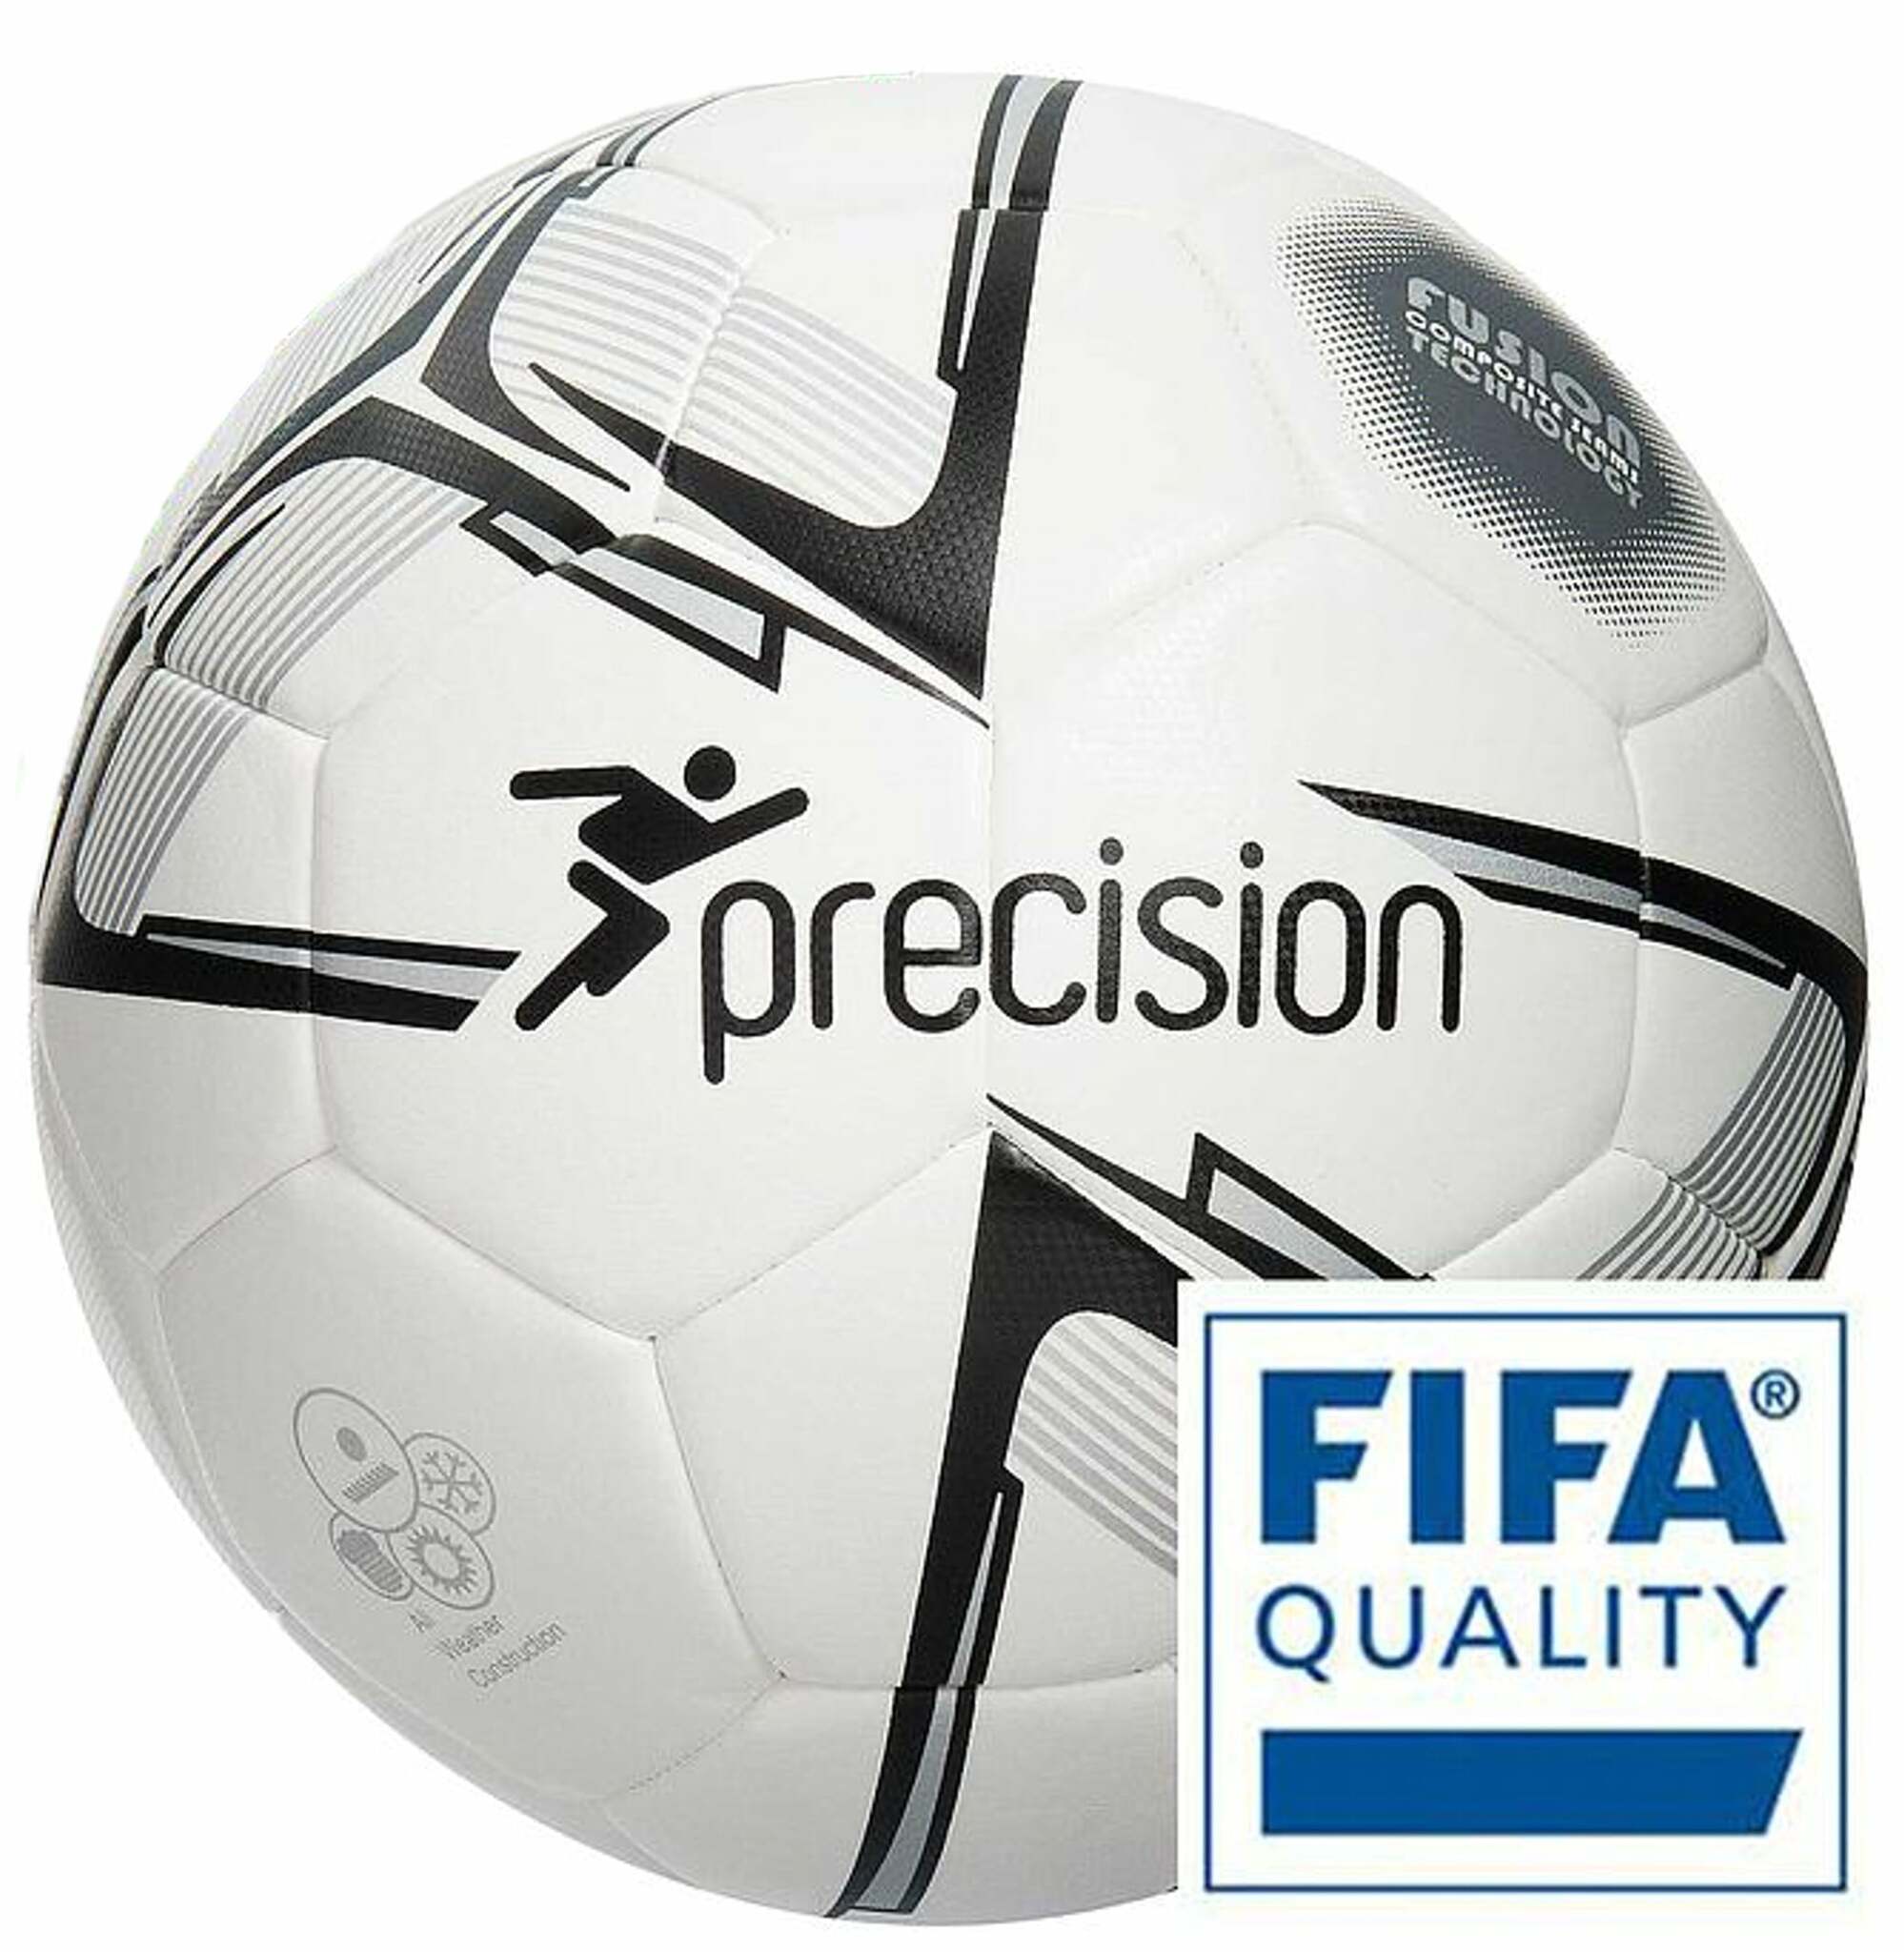 Se Fusion Rotario fodbold - Precision hos Sportnordica.dk